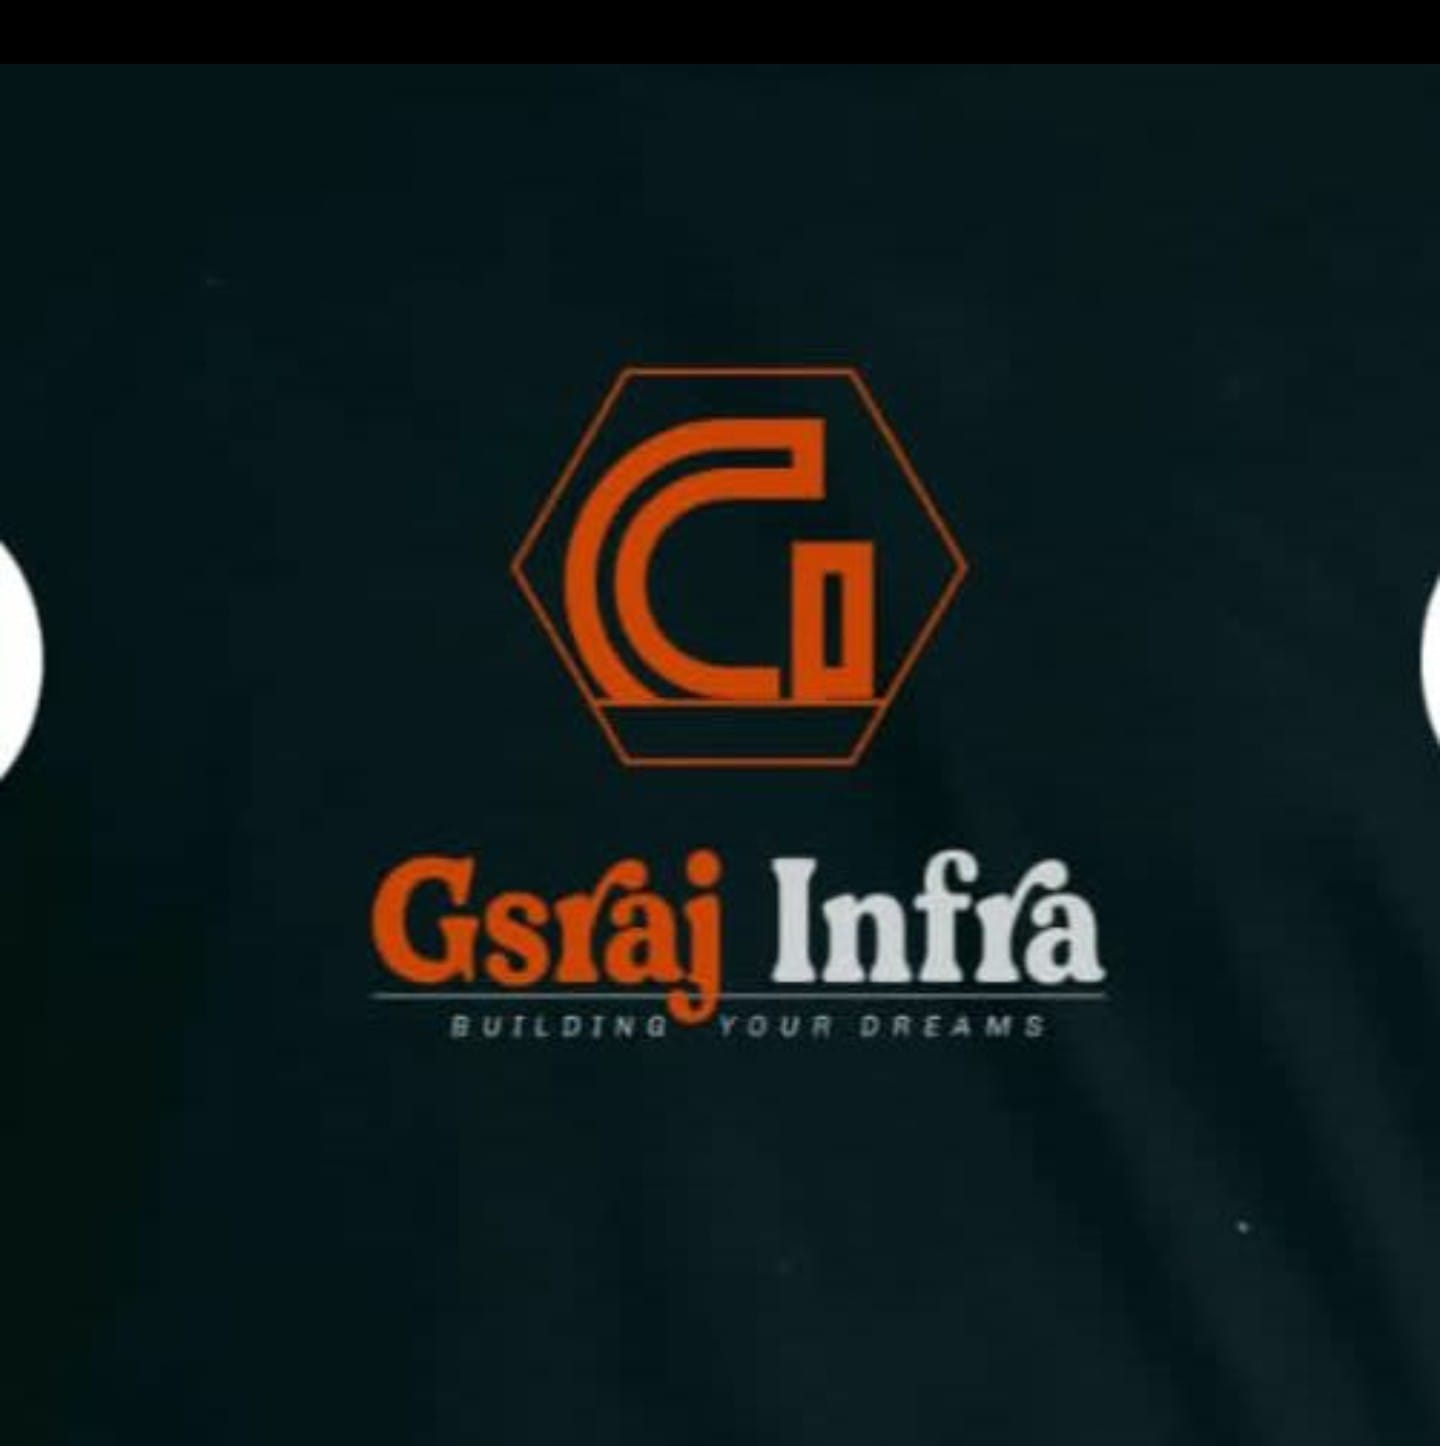 Gsraj infra Pvt Ltd Logo